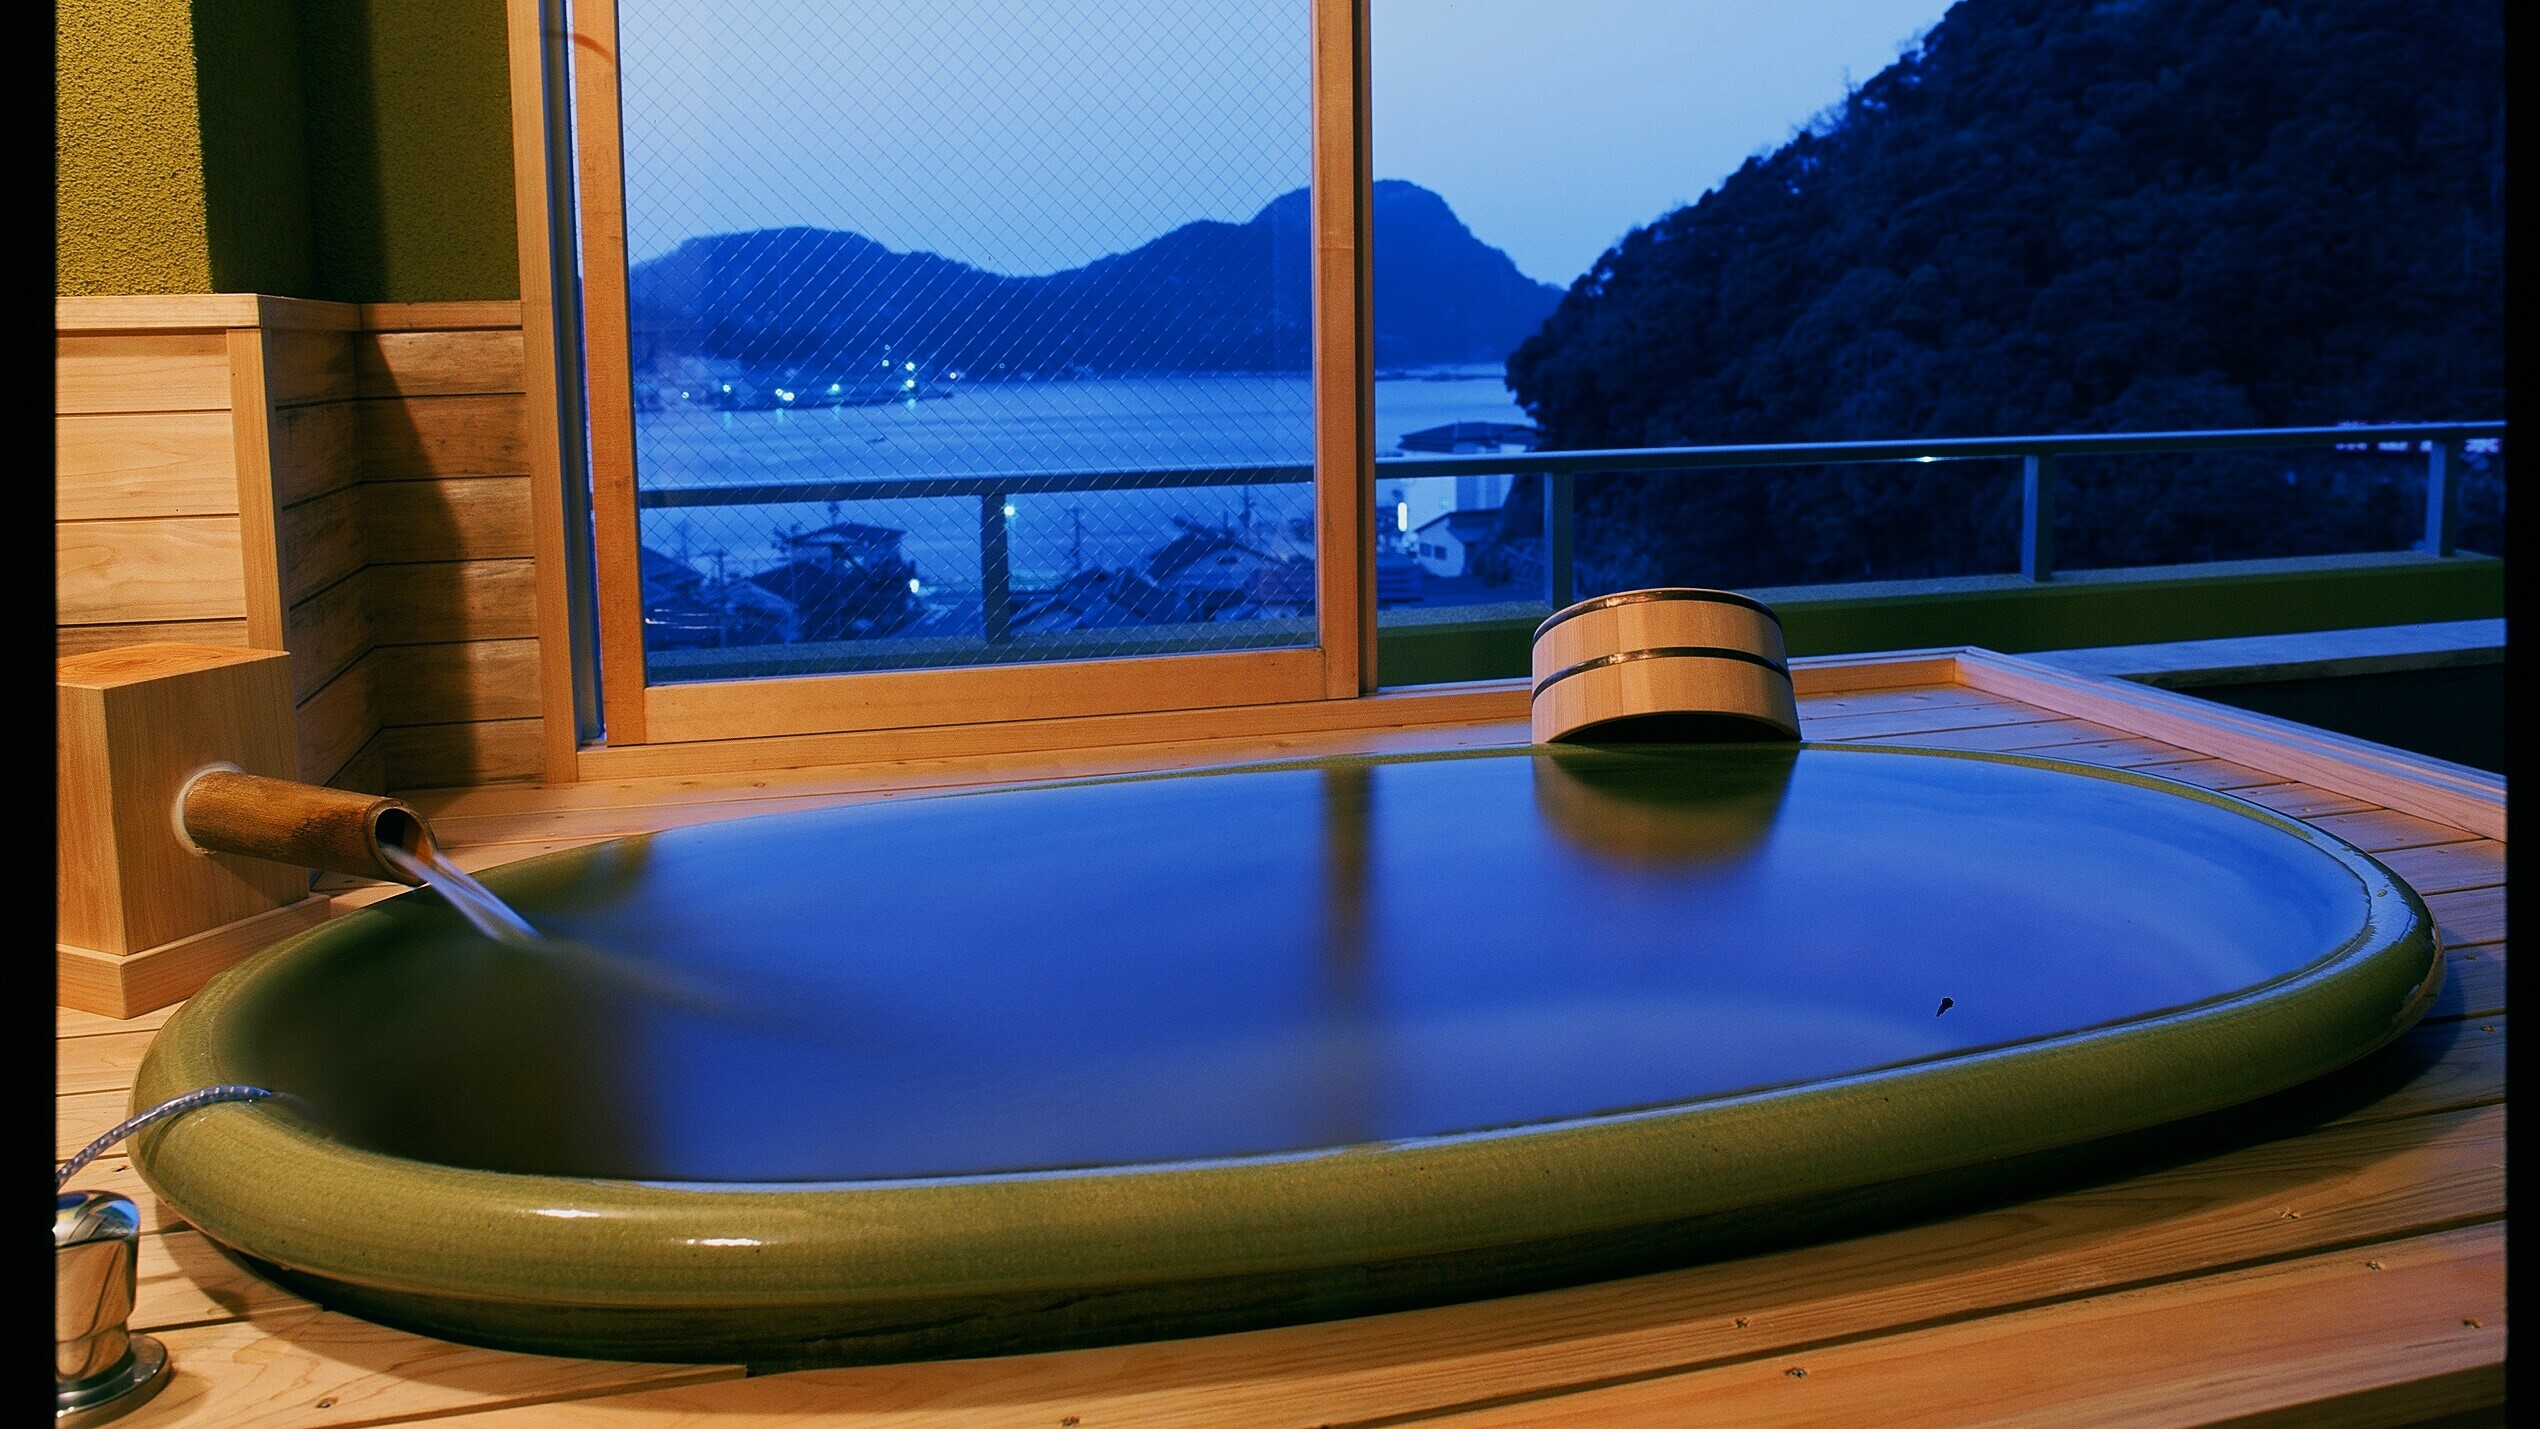 「つきあんこう」では、柴山港を臨む「半露天の温泉風呂」をお楽しみいただけます